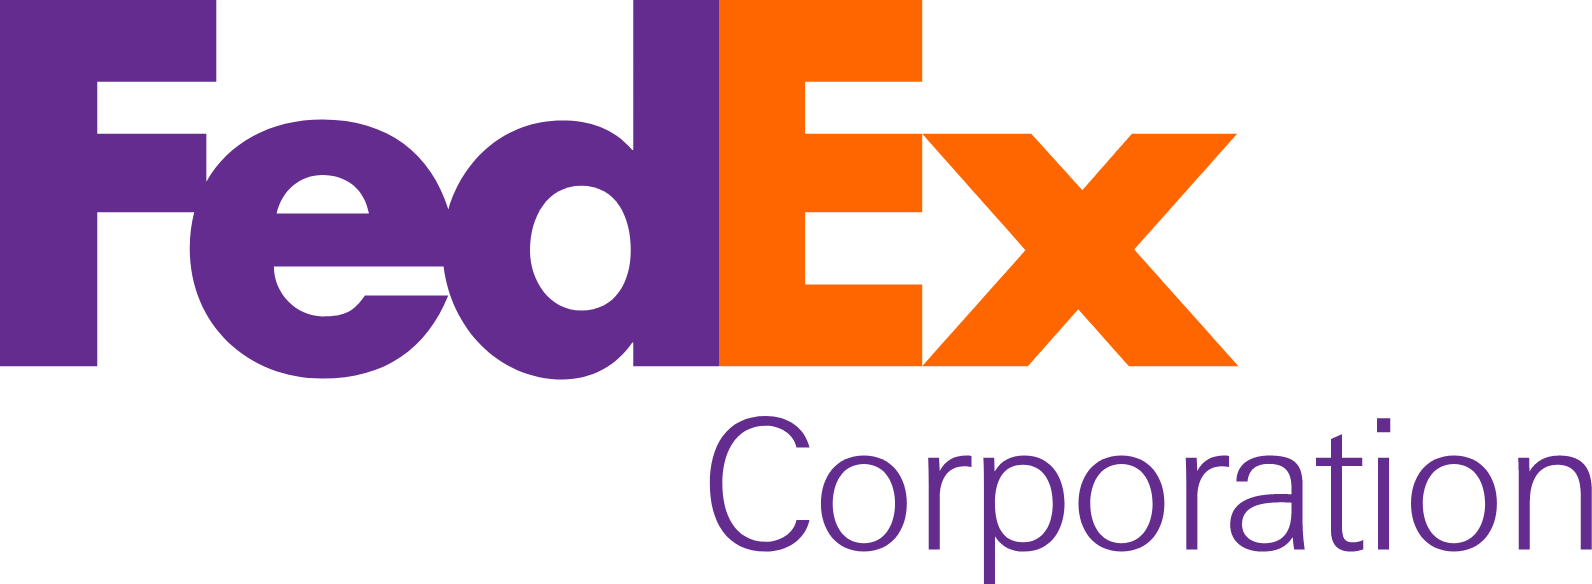 FedEx logo large (transparent PNG)